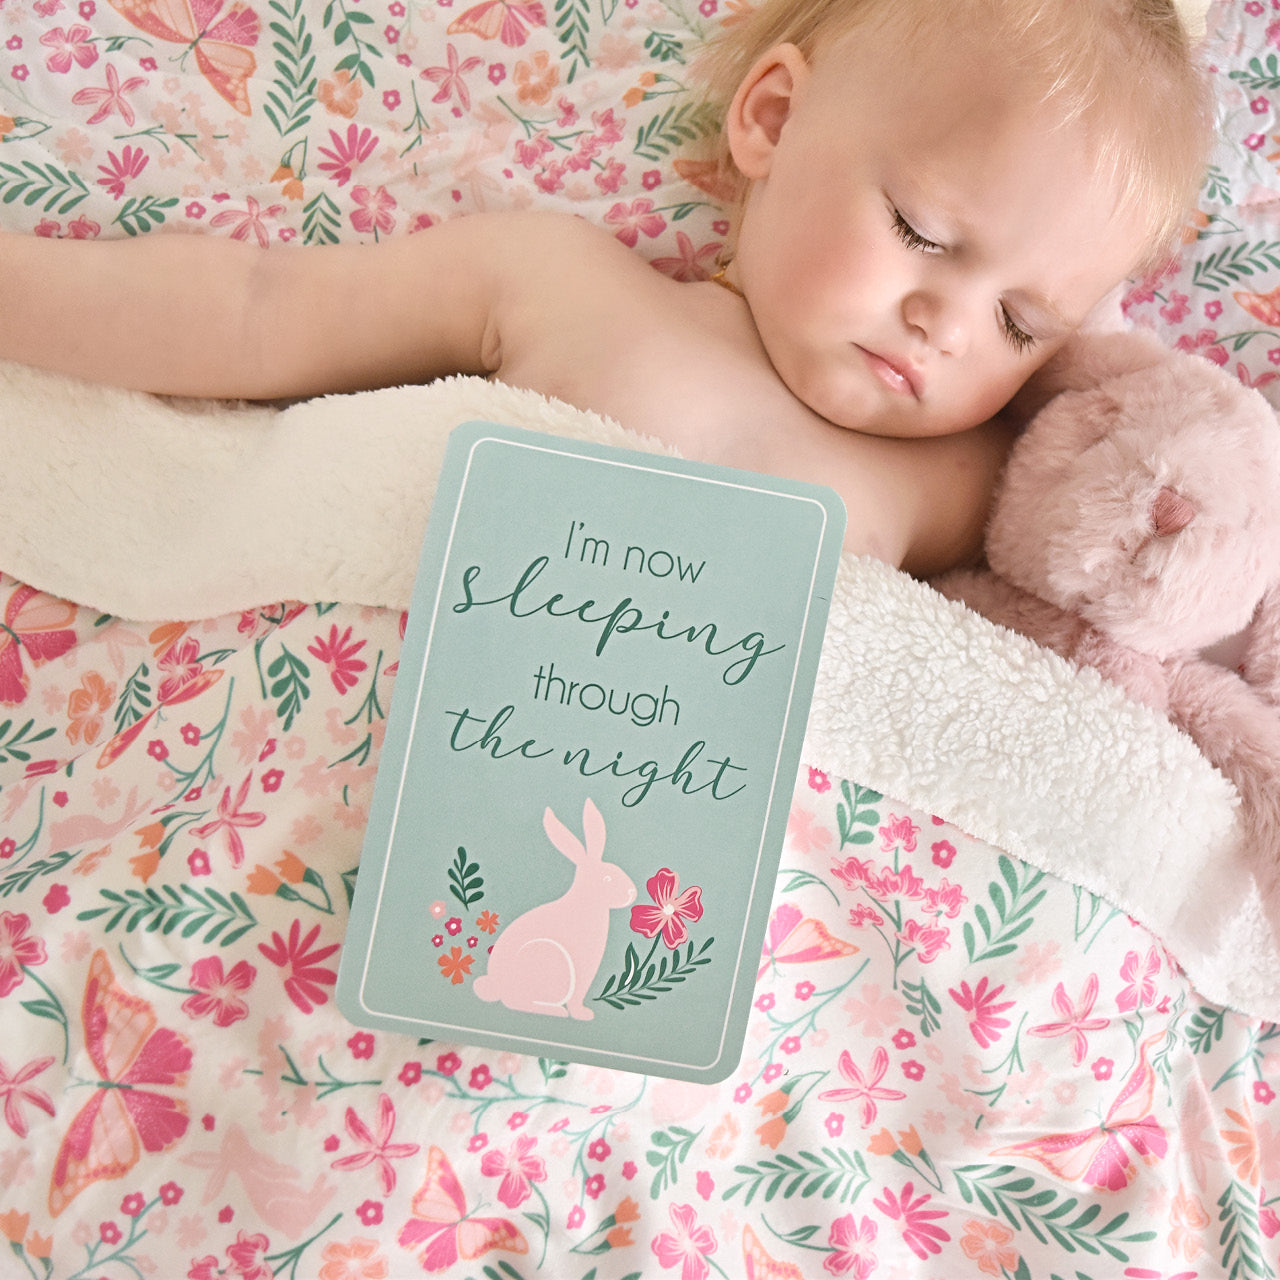 Lifestyle shot of Botanical Milestone Card on sleeping baby